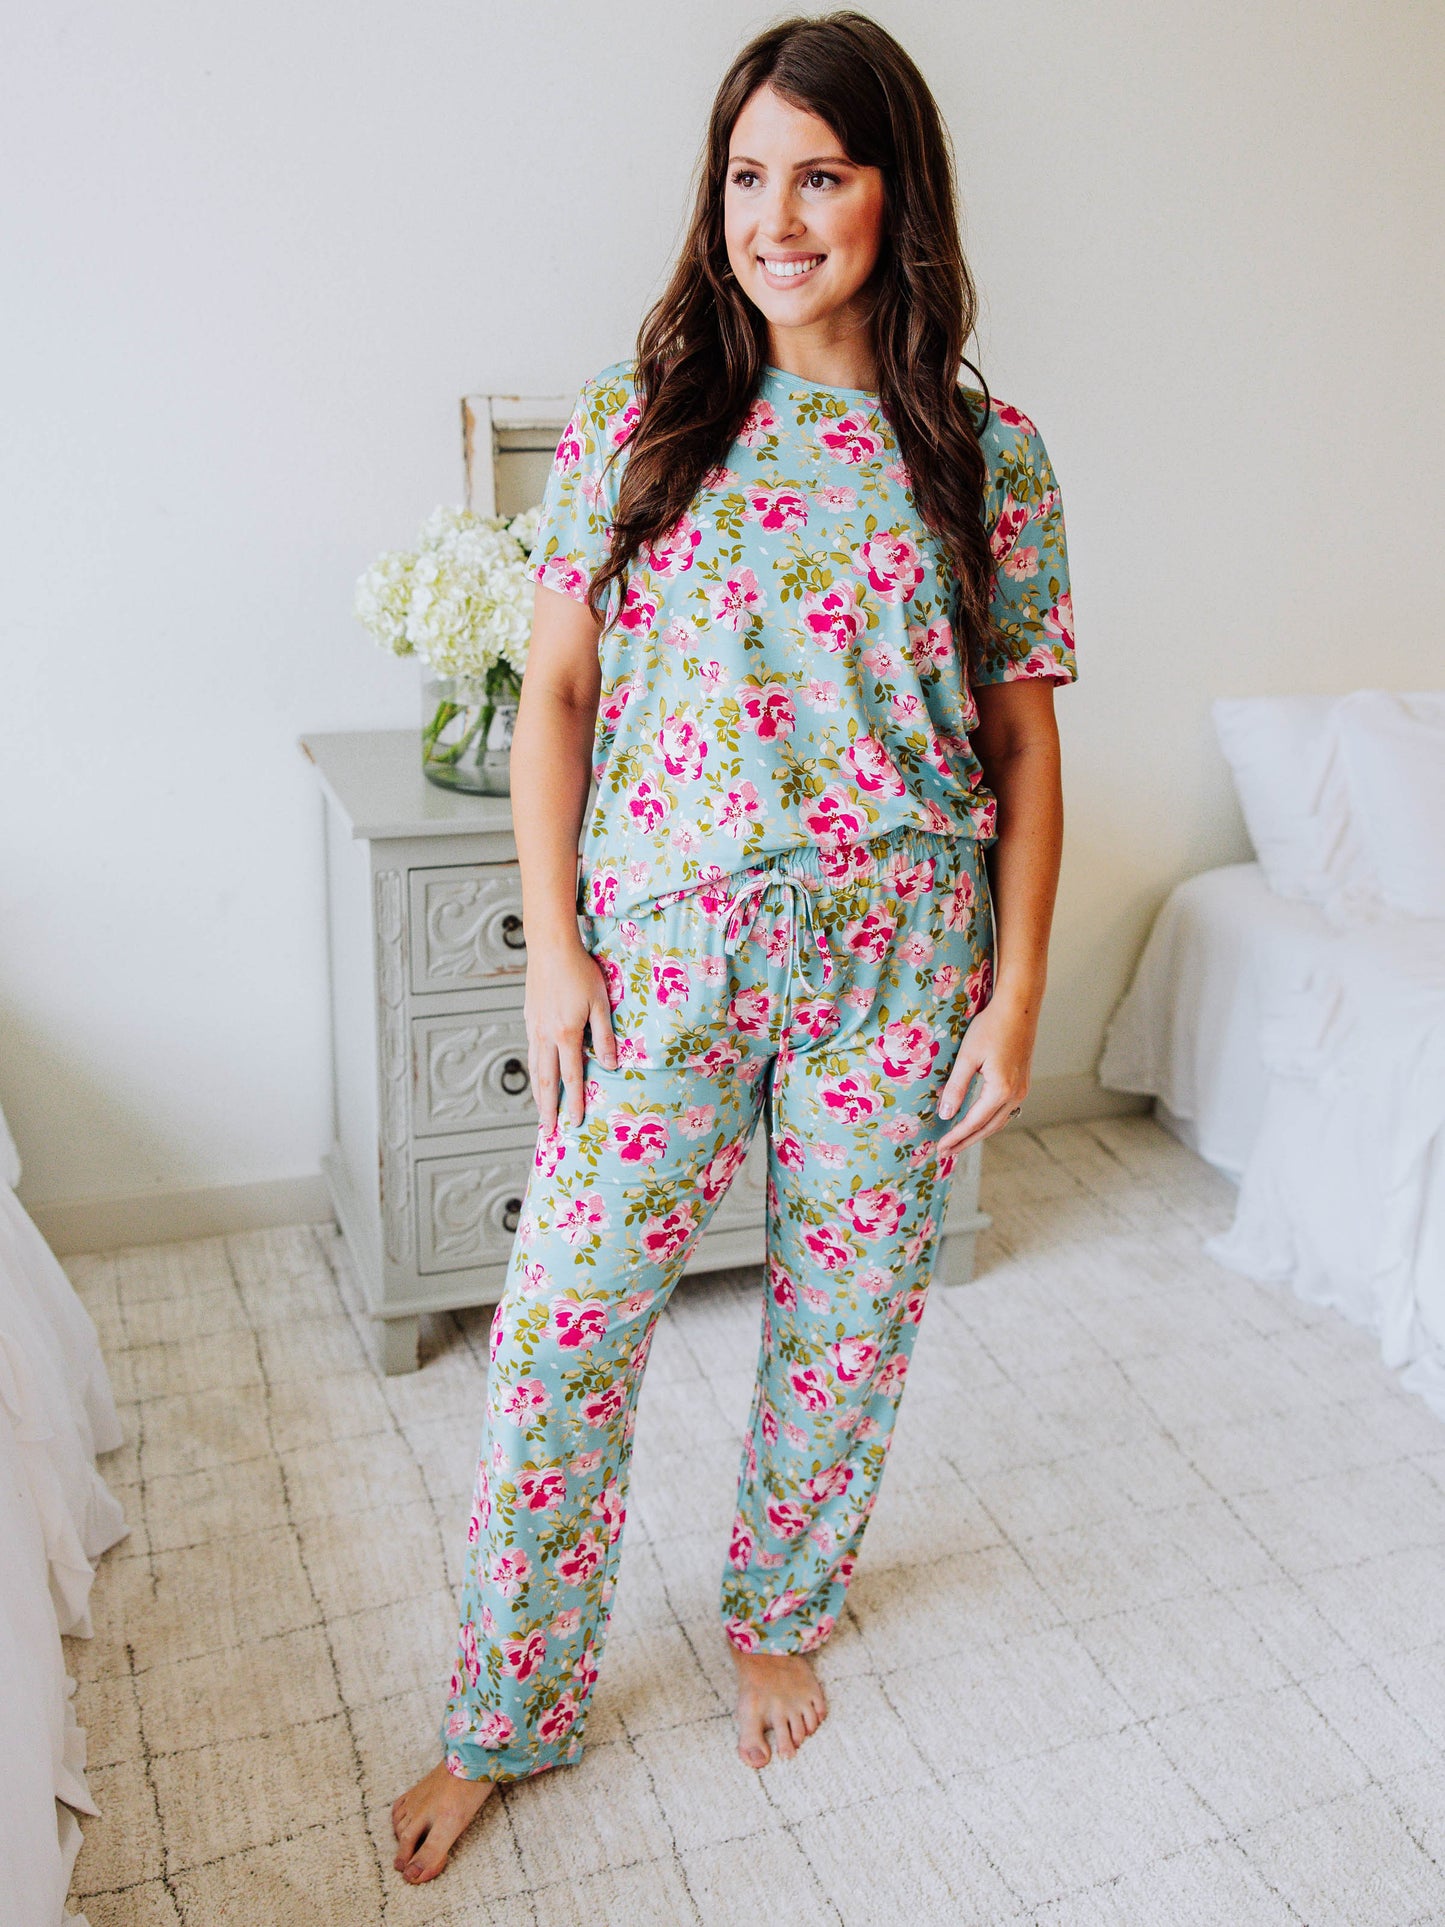 Women's Cloud Pajamas - Swirly Floral Pinks